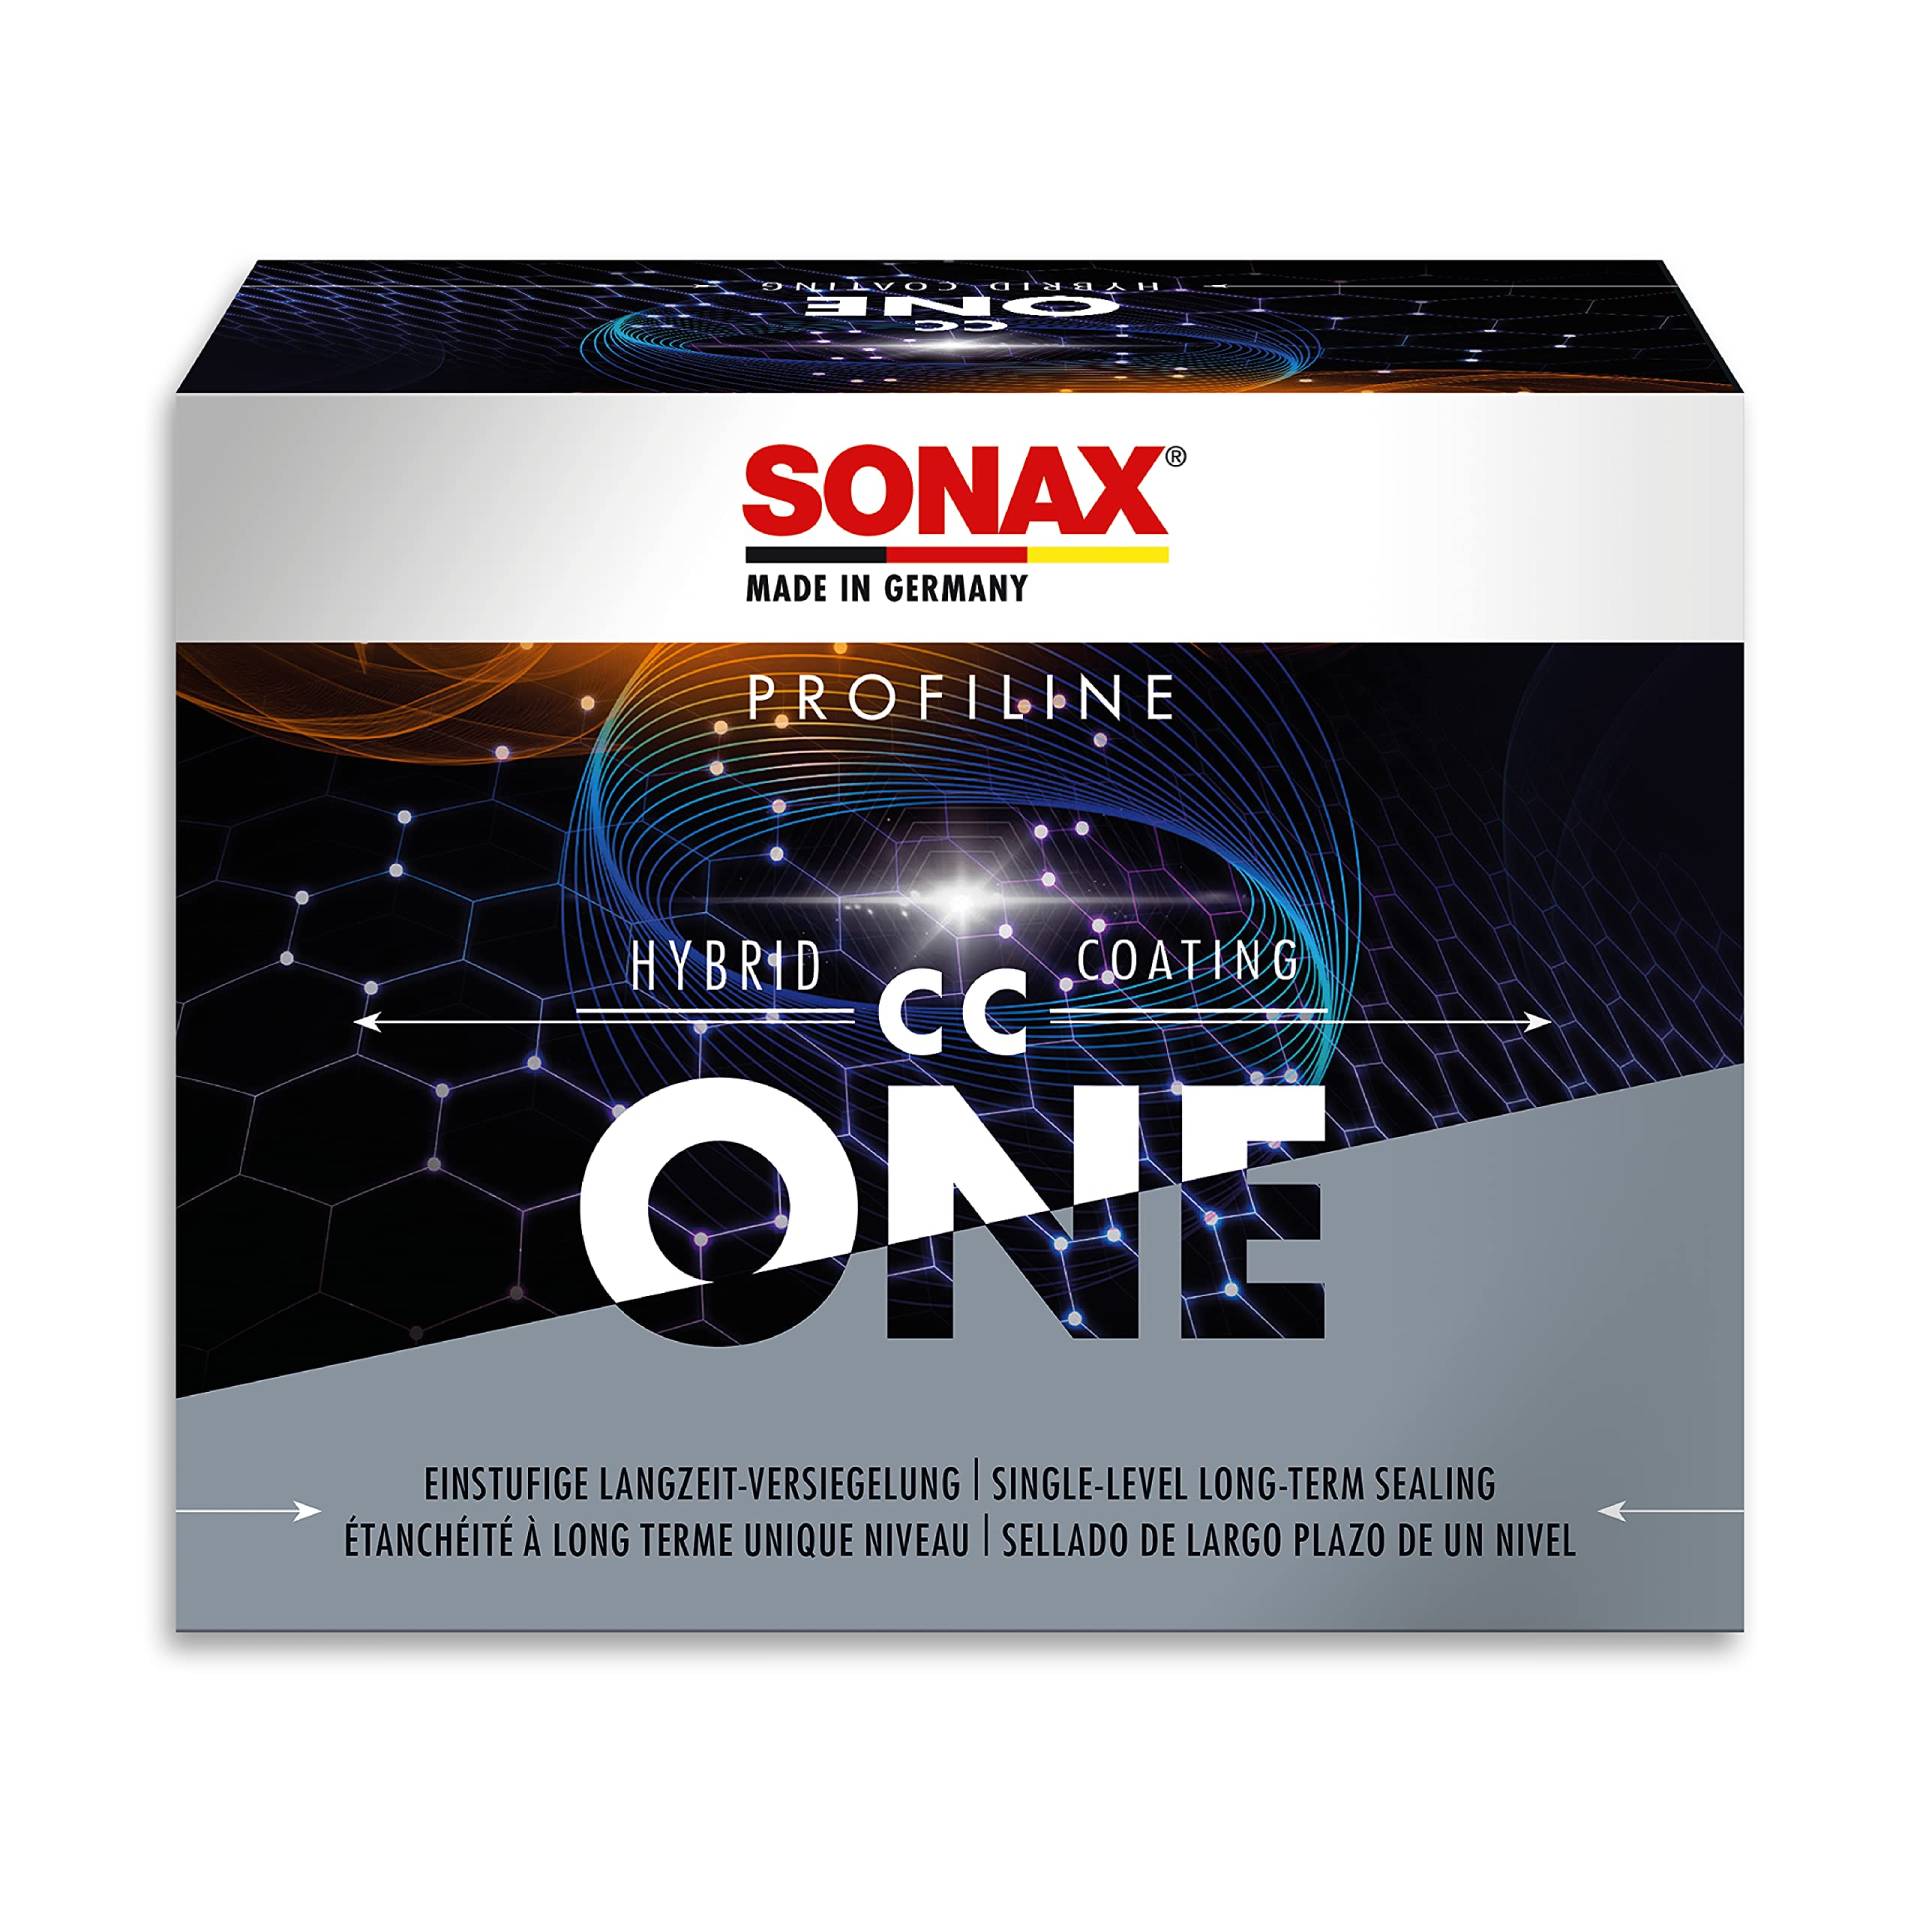 SONAX PROFILINE HybridCoating CC One (50 ml) Langzeitversiegelung, mehr Farbtiefe und weiche schmutzabweisende wachsartige Oberflächen, bis zu 15 Monaten Schutz, Art-Nr. 02670000 von SONAX